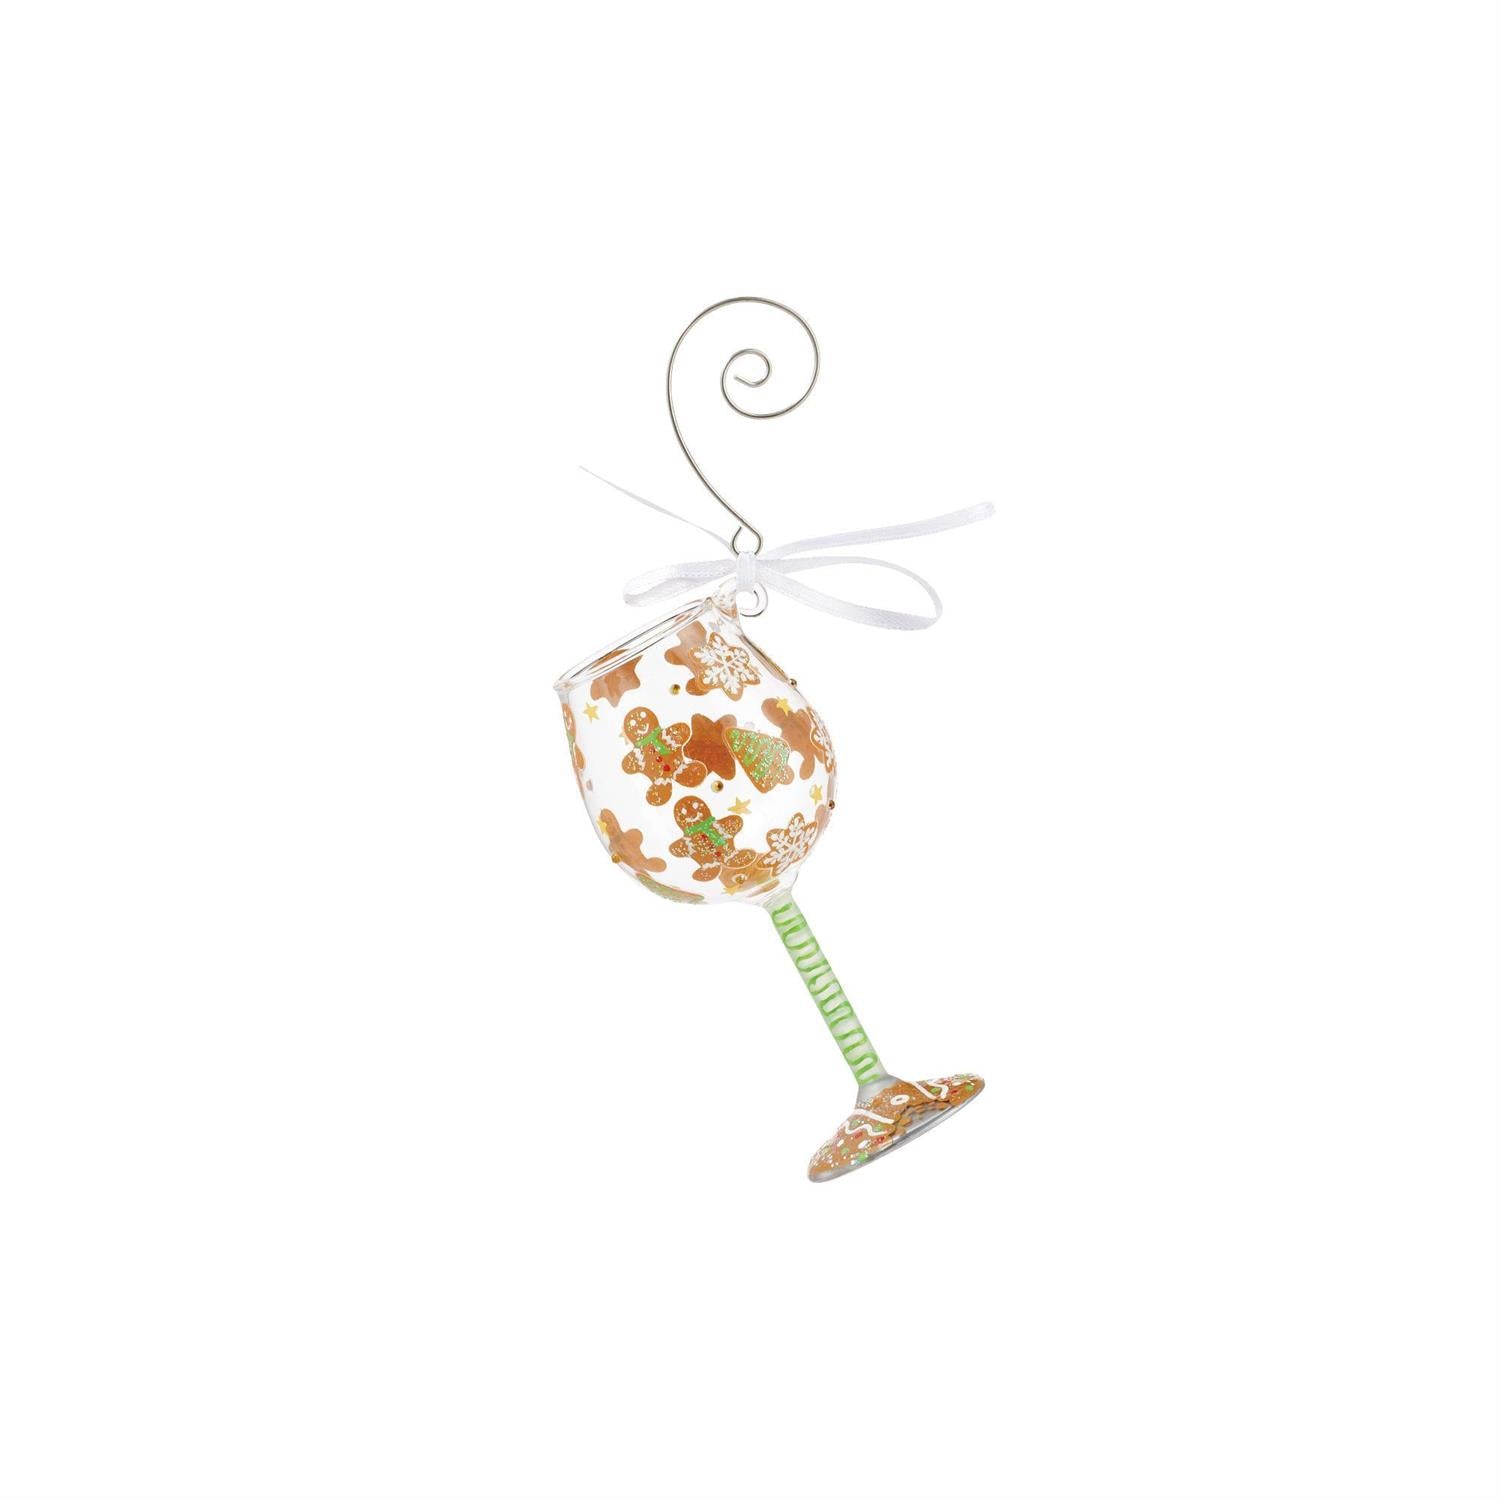 Sale Lolita Gingerbread dreams Mini Wine Glass Ornament